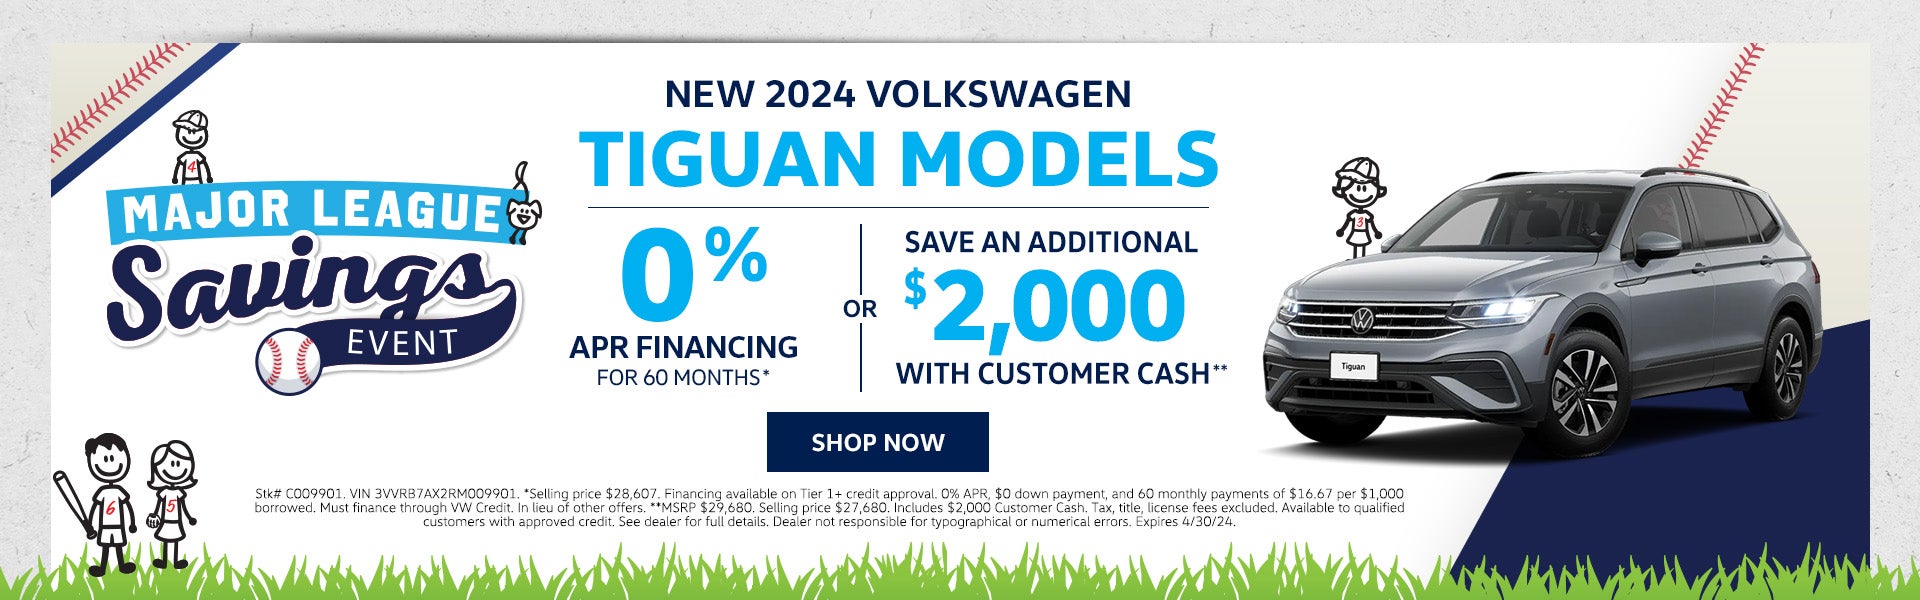 New 2024 VW Tiguans